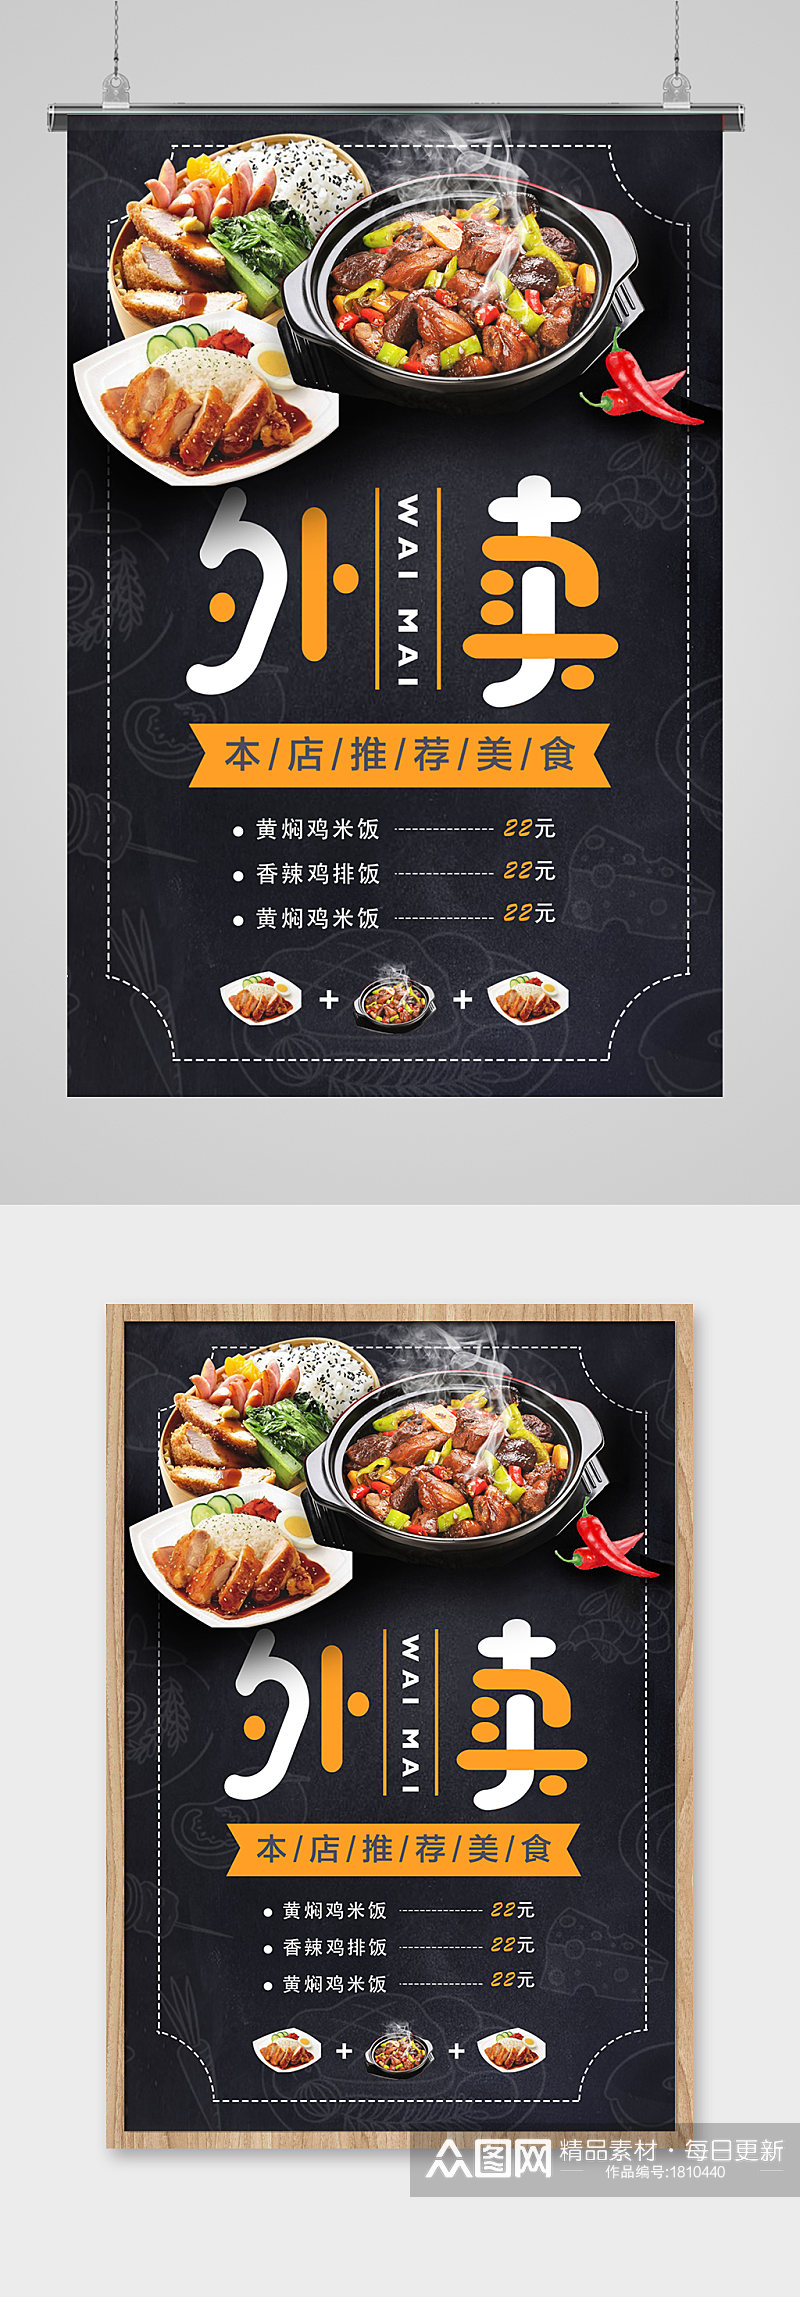 创意餐厅鸡排外卖推荐菜单餐饮美食海报素材